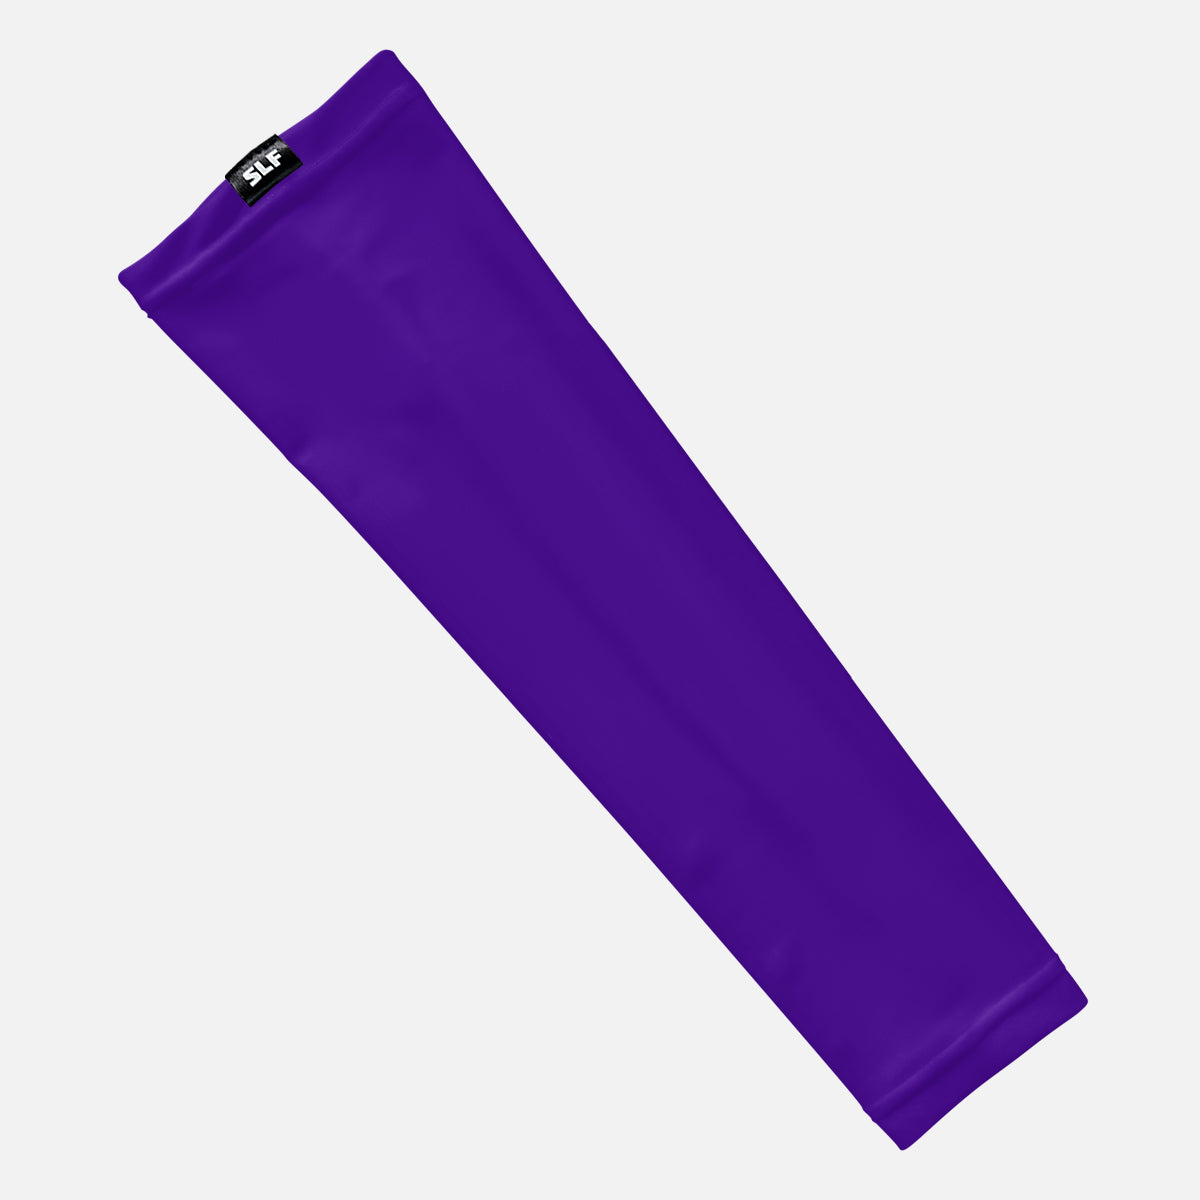 Hue Purple Arm Sleeve